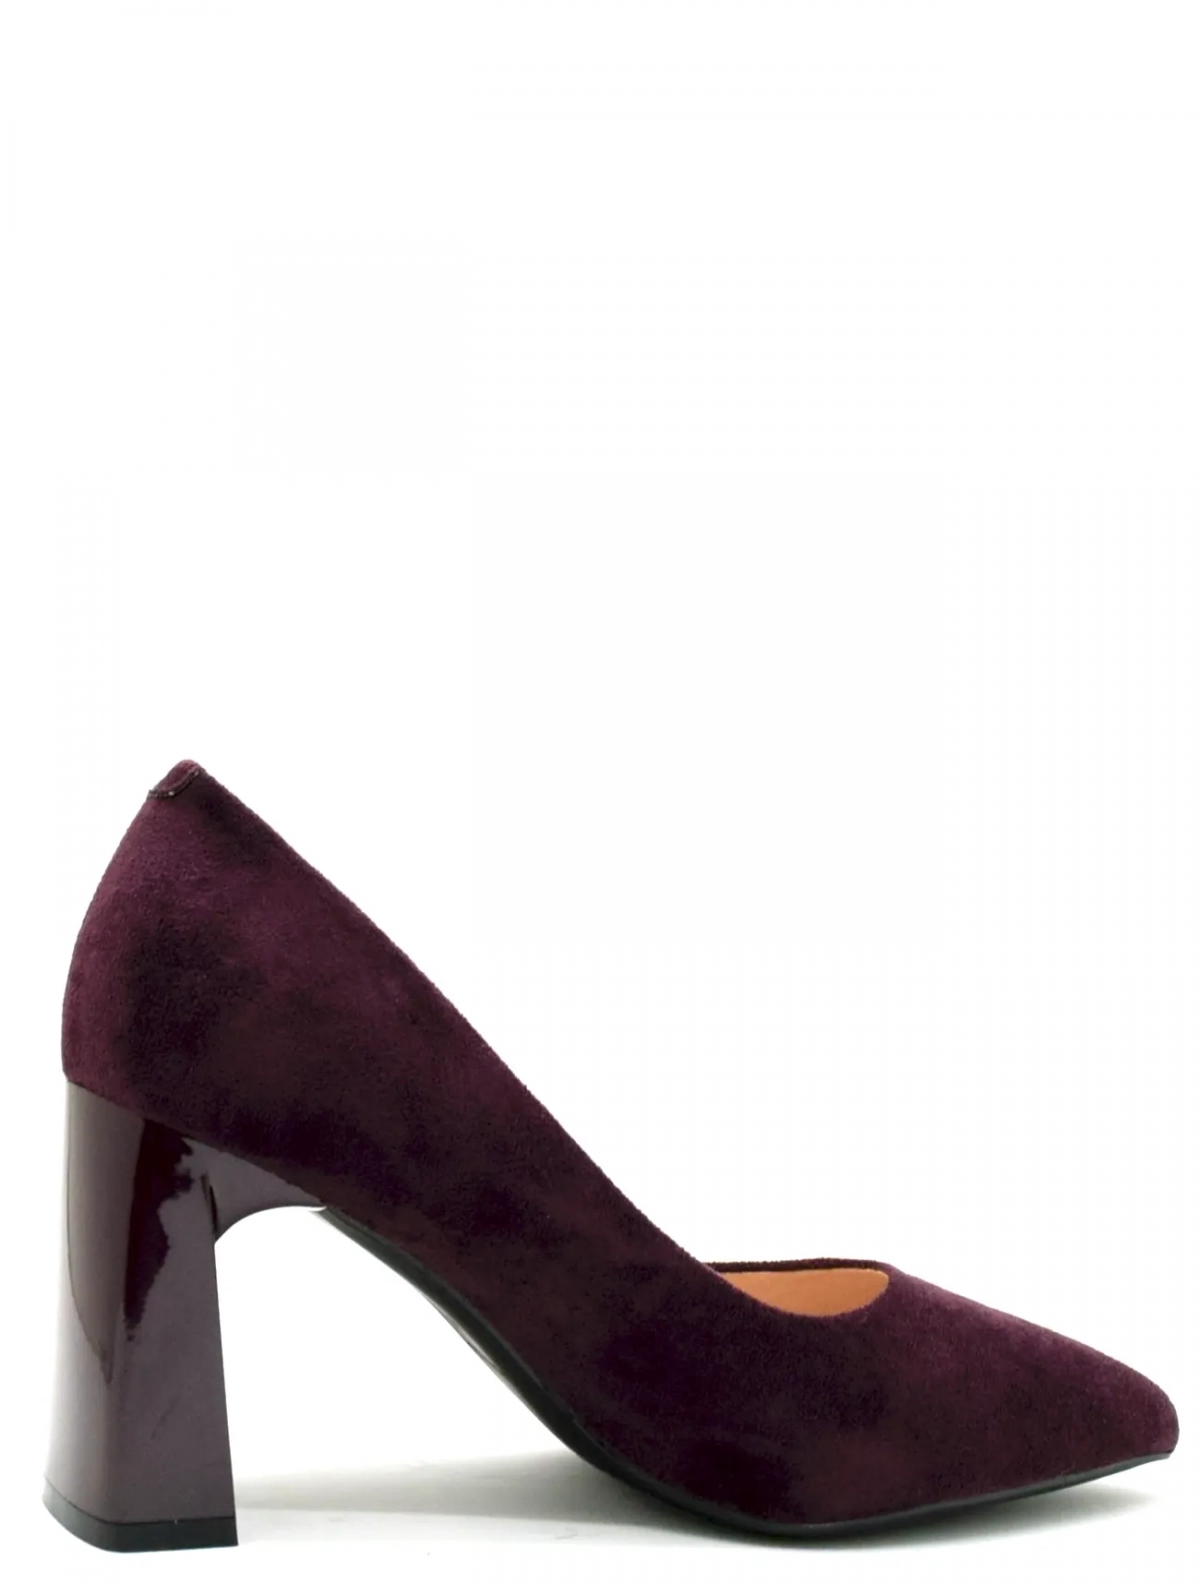 UILLIRRY FDU33-6 женские туфли